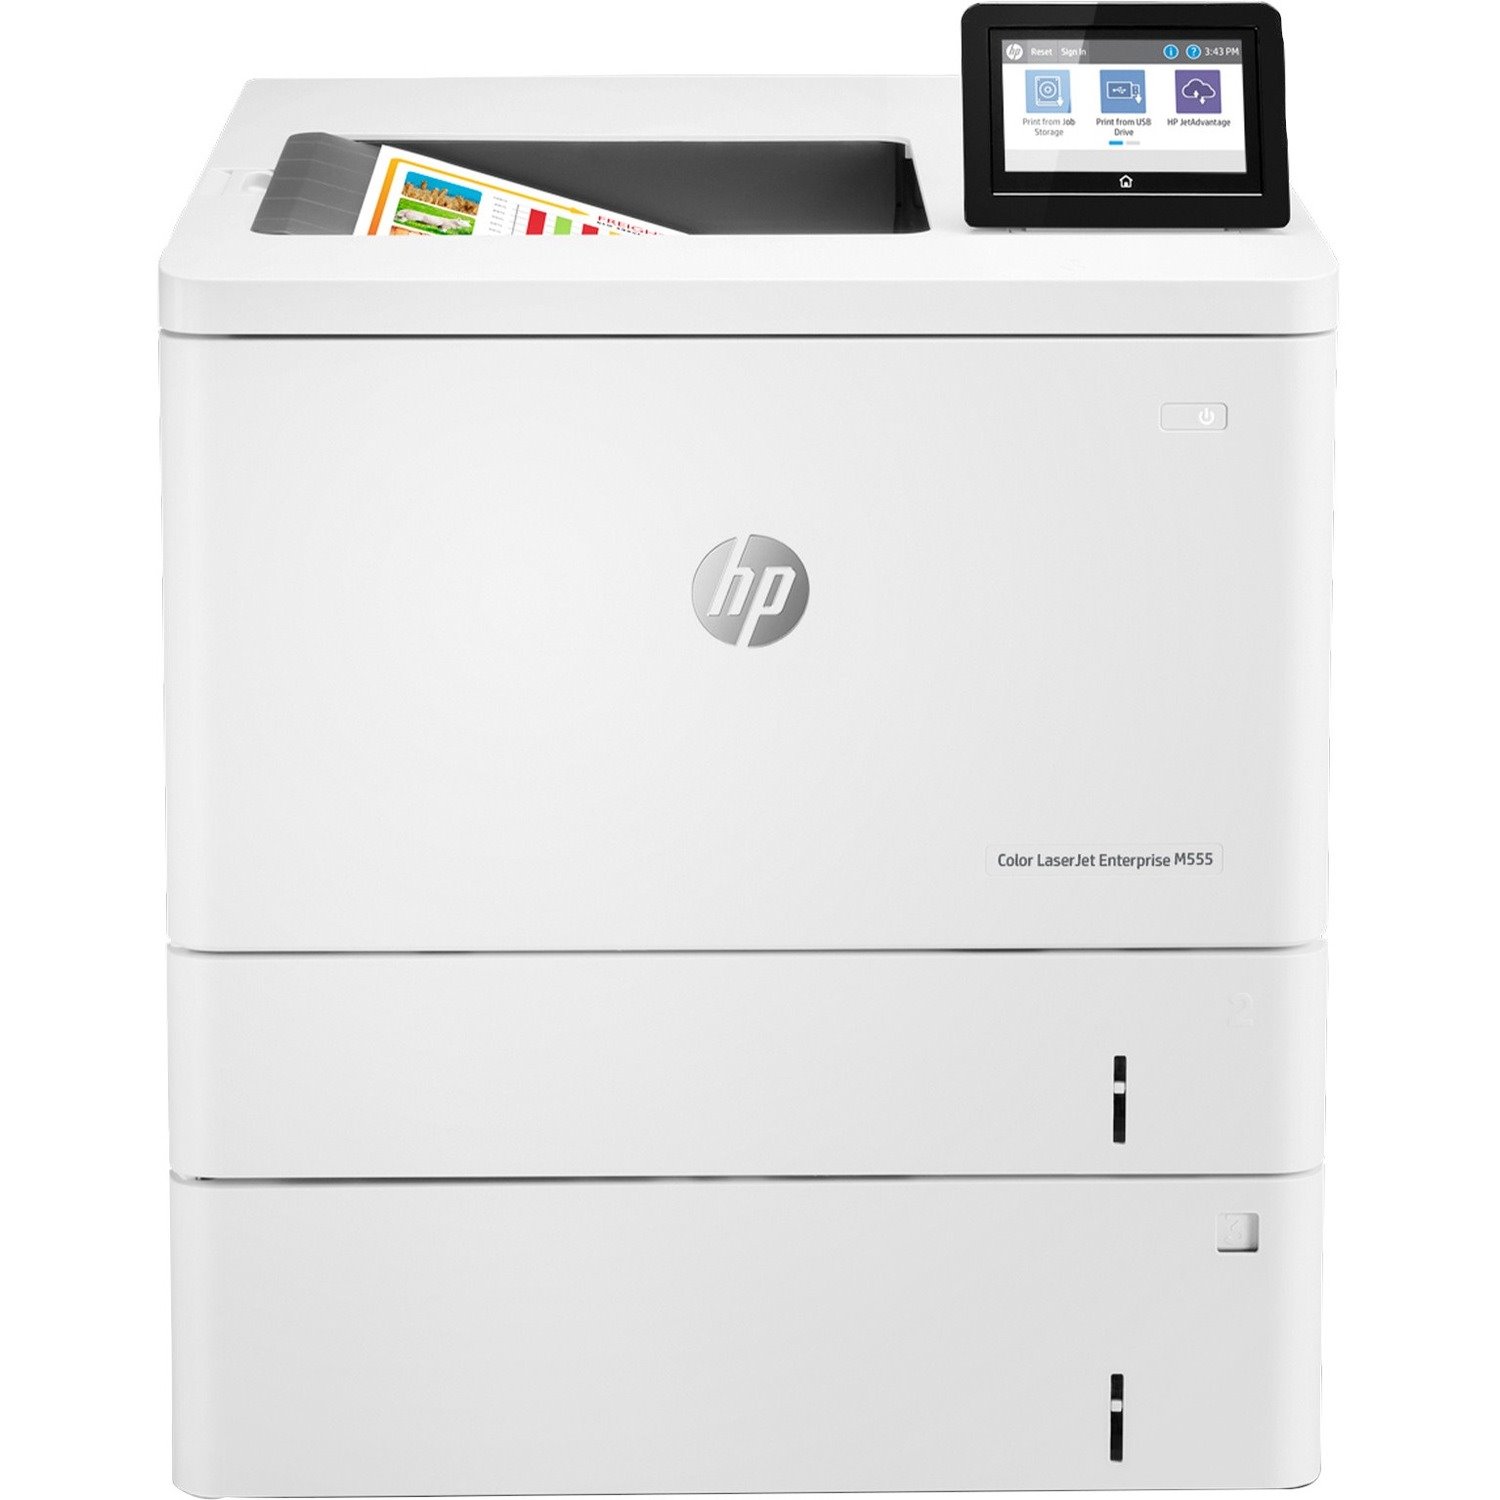 HP LaserJet Enterprise M555 M555x Desktop Laser Printer - Color